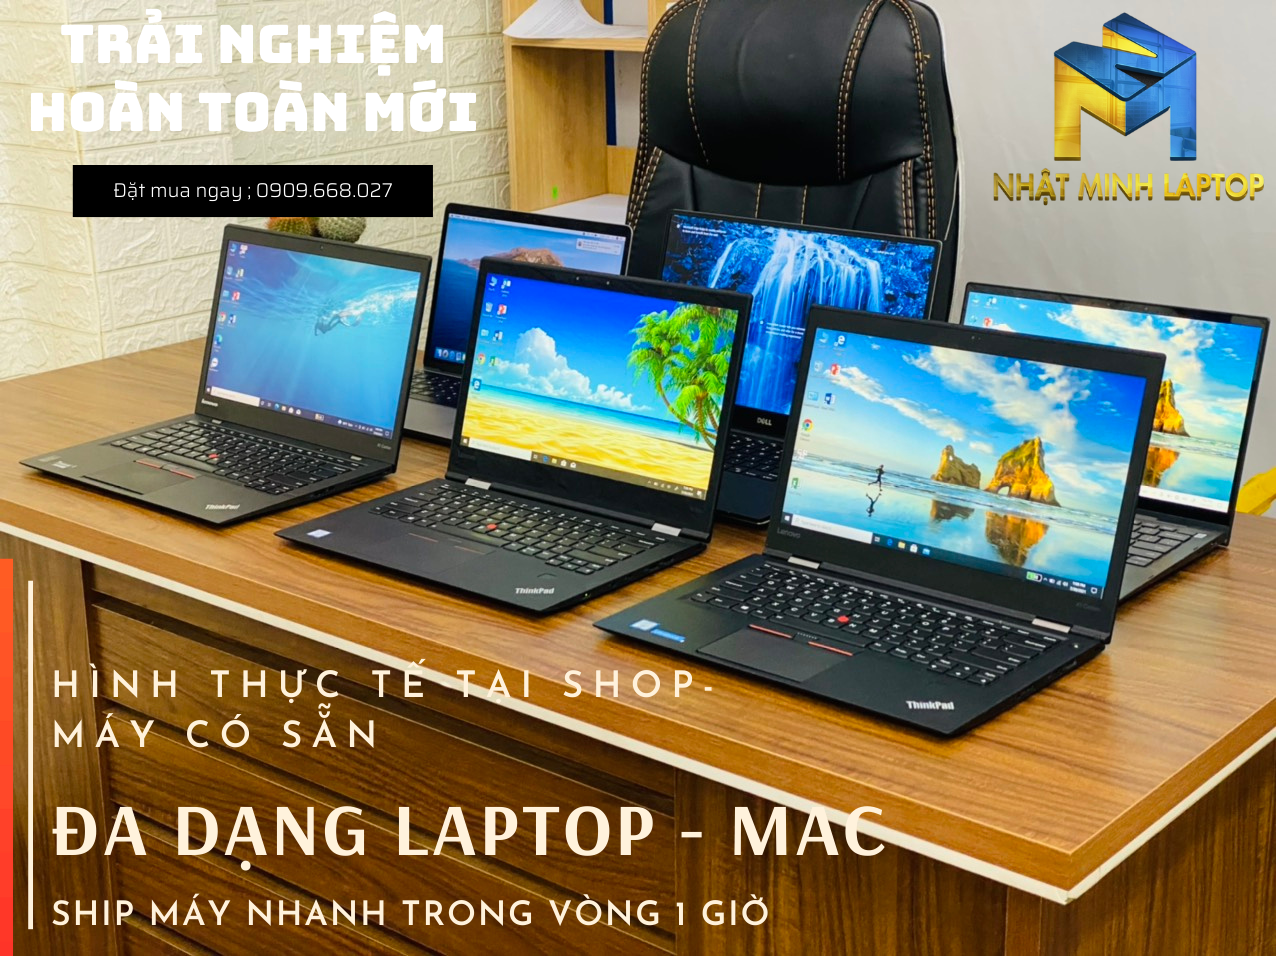 Đa dạng laptop tại Nhật Minh